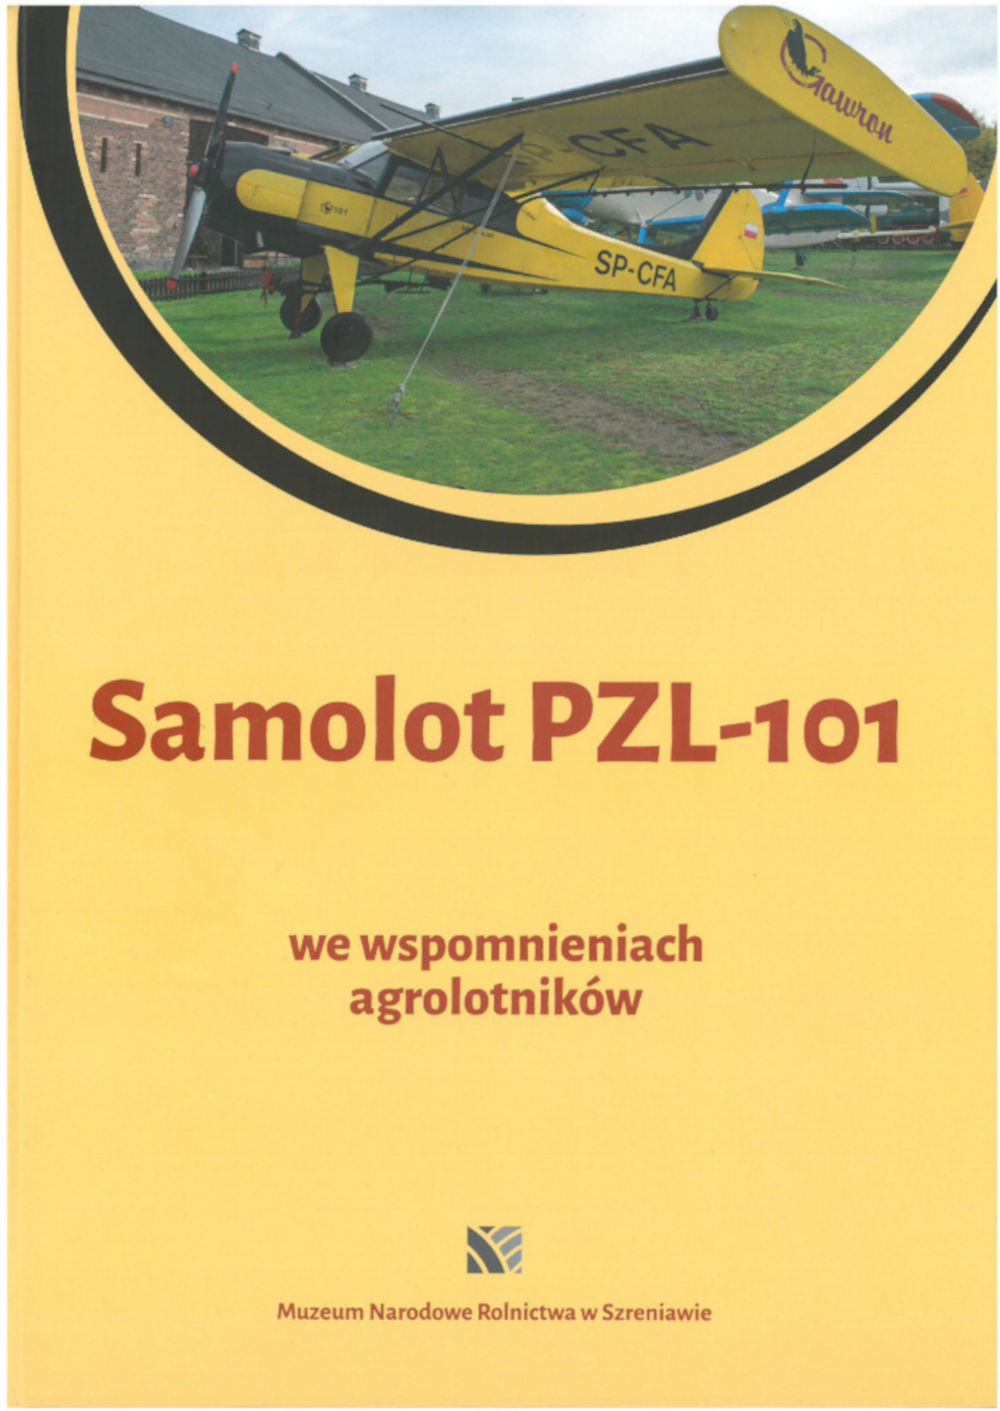 "Gawron PZL-101 we wspomnieniach agrolotników" - Okładka książki / mat. wydawnictwa